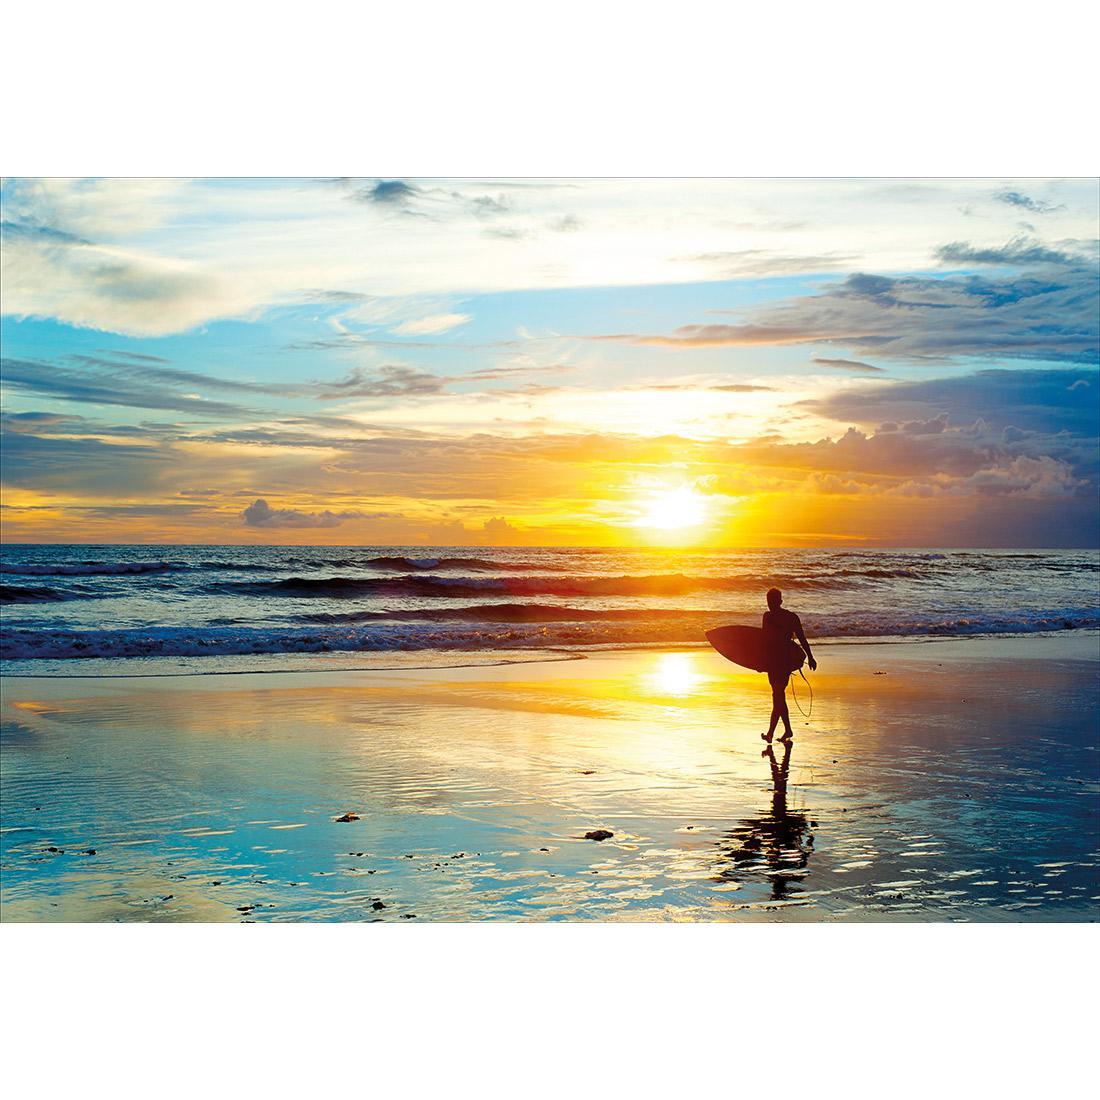 Sunset Surf - wallart-australia - Canvas